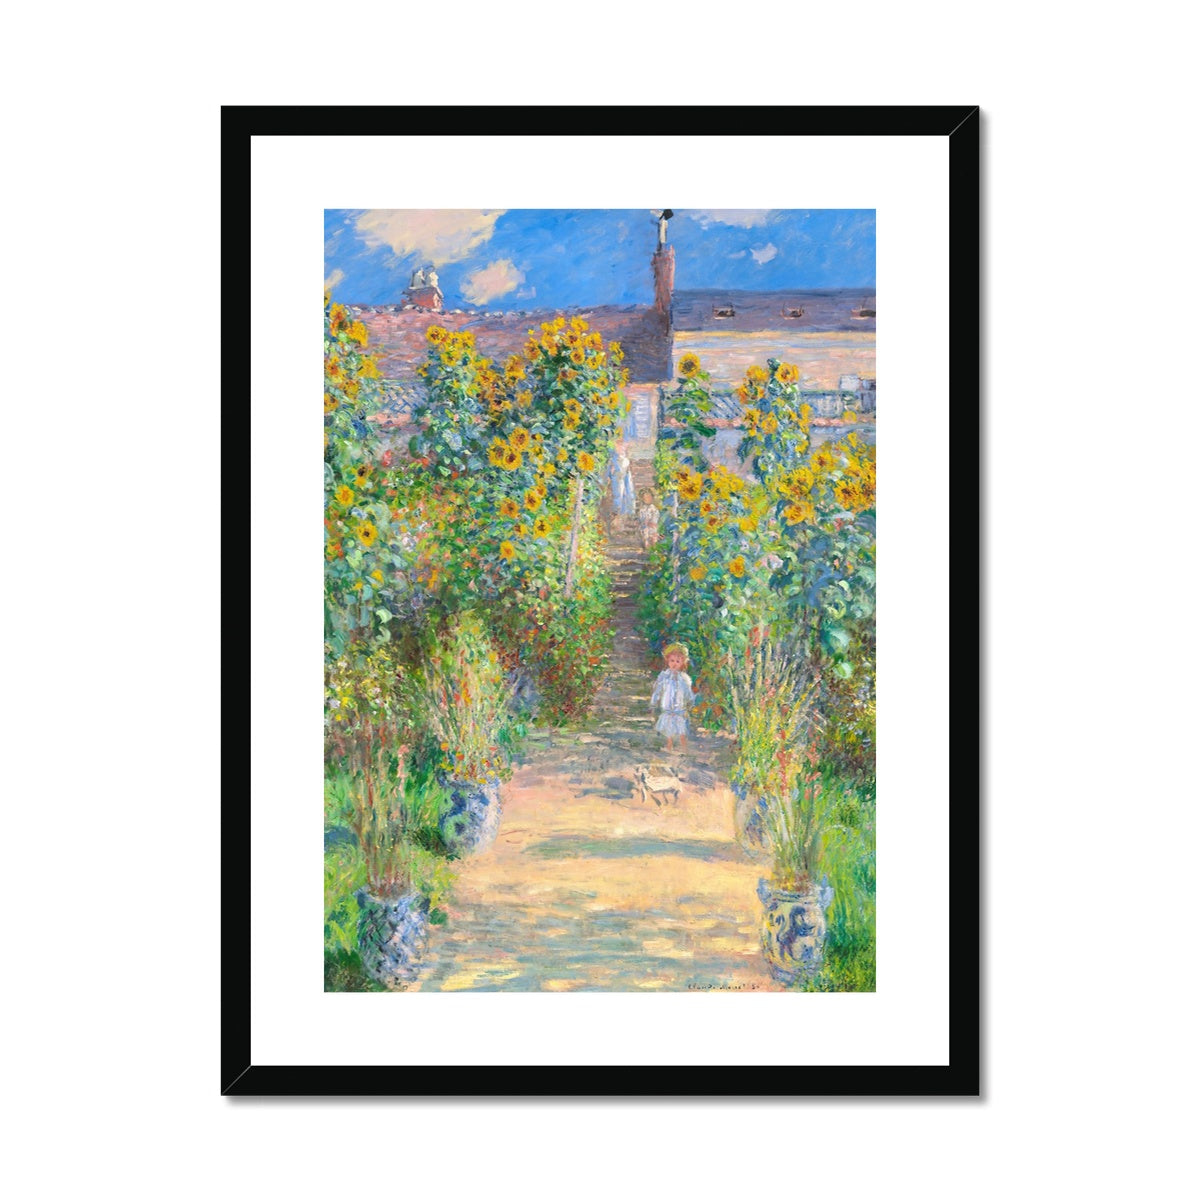 Claude Monet Framed Open Edition Art Print. 'The Artist's Garden at Vétheuil'. Art Gallery Historic Art